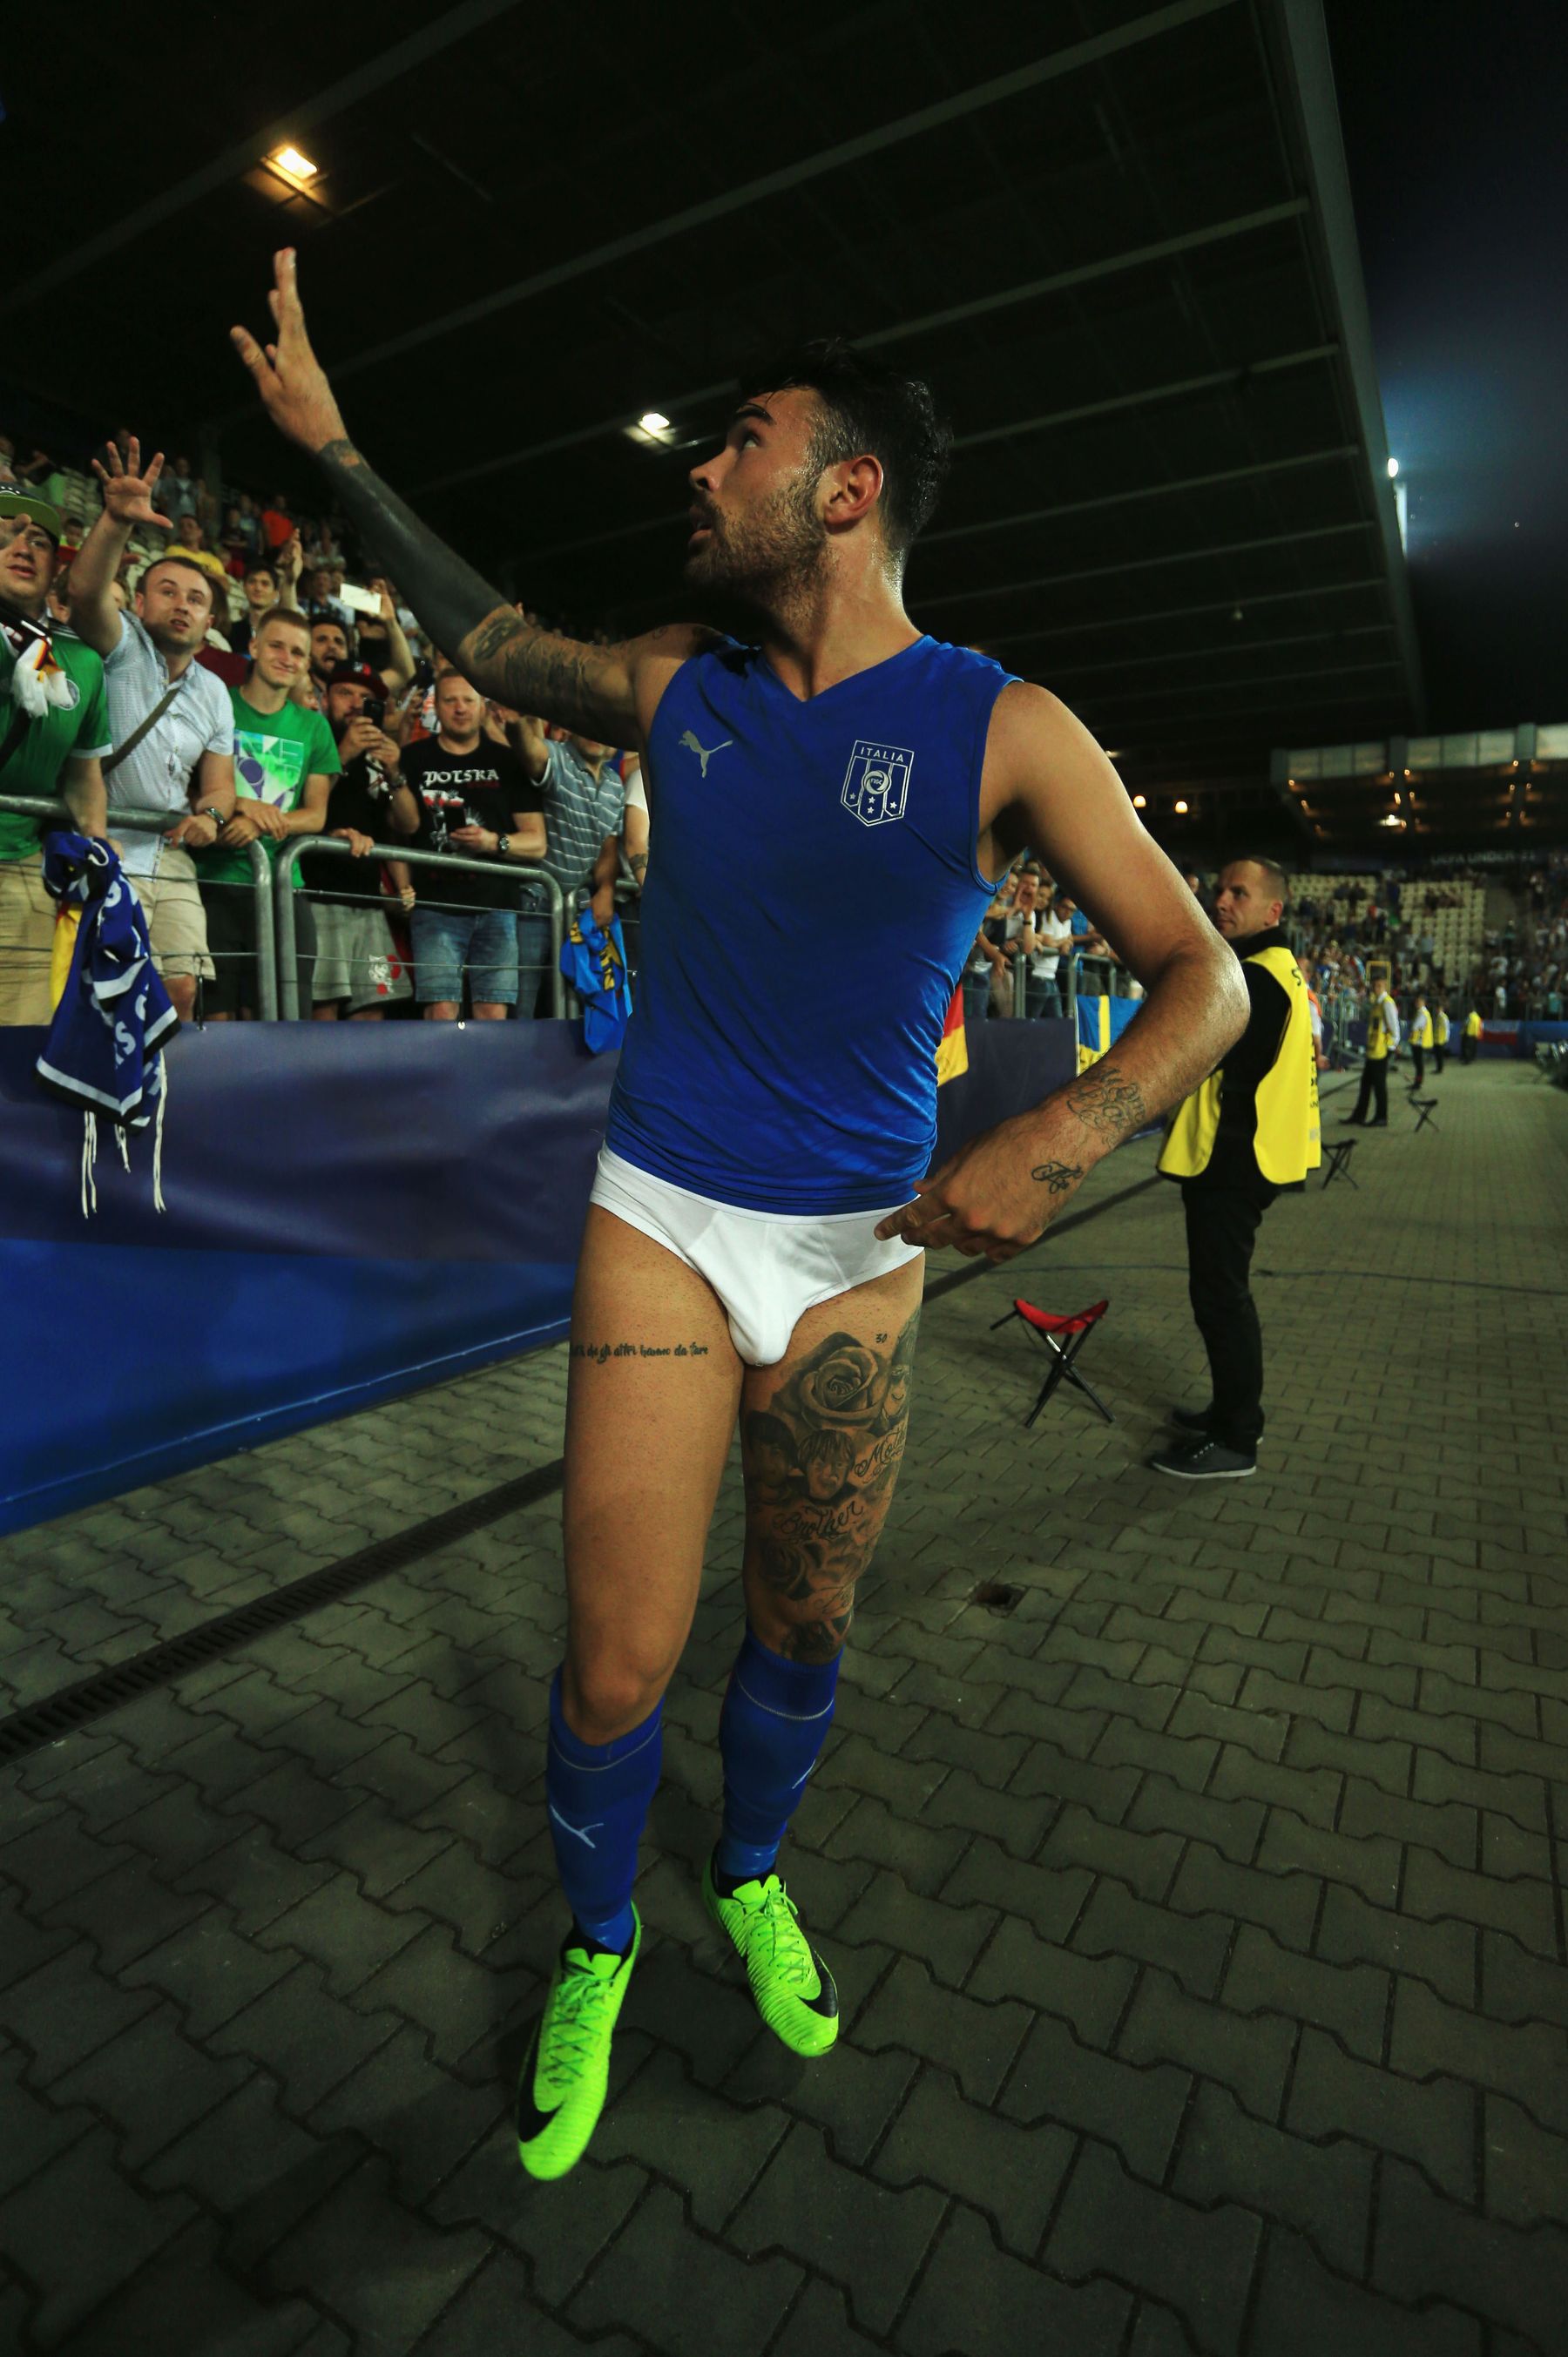 Así celebra este jugador italiano la victoria de su equipo de fútbol